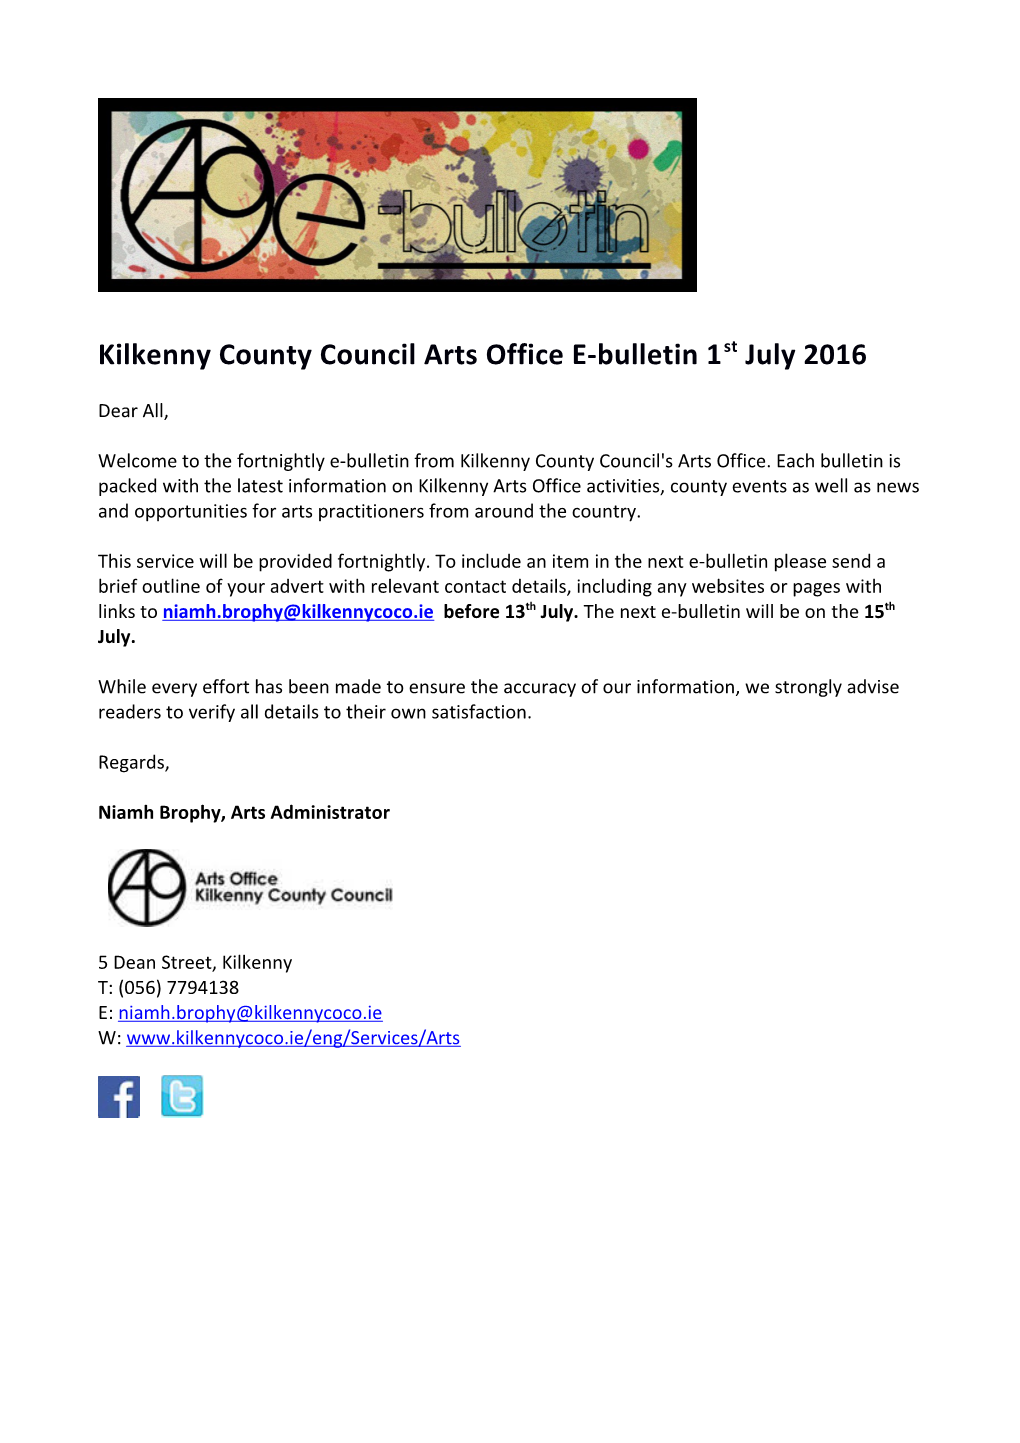 Kilkenny County Council Arts Office E-Bulletin 1St July 2016